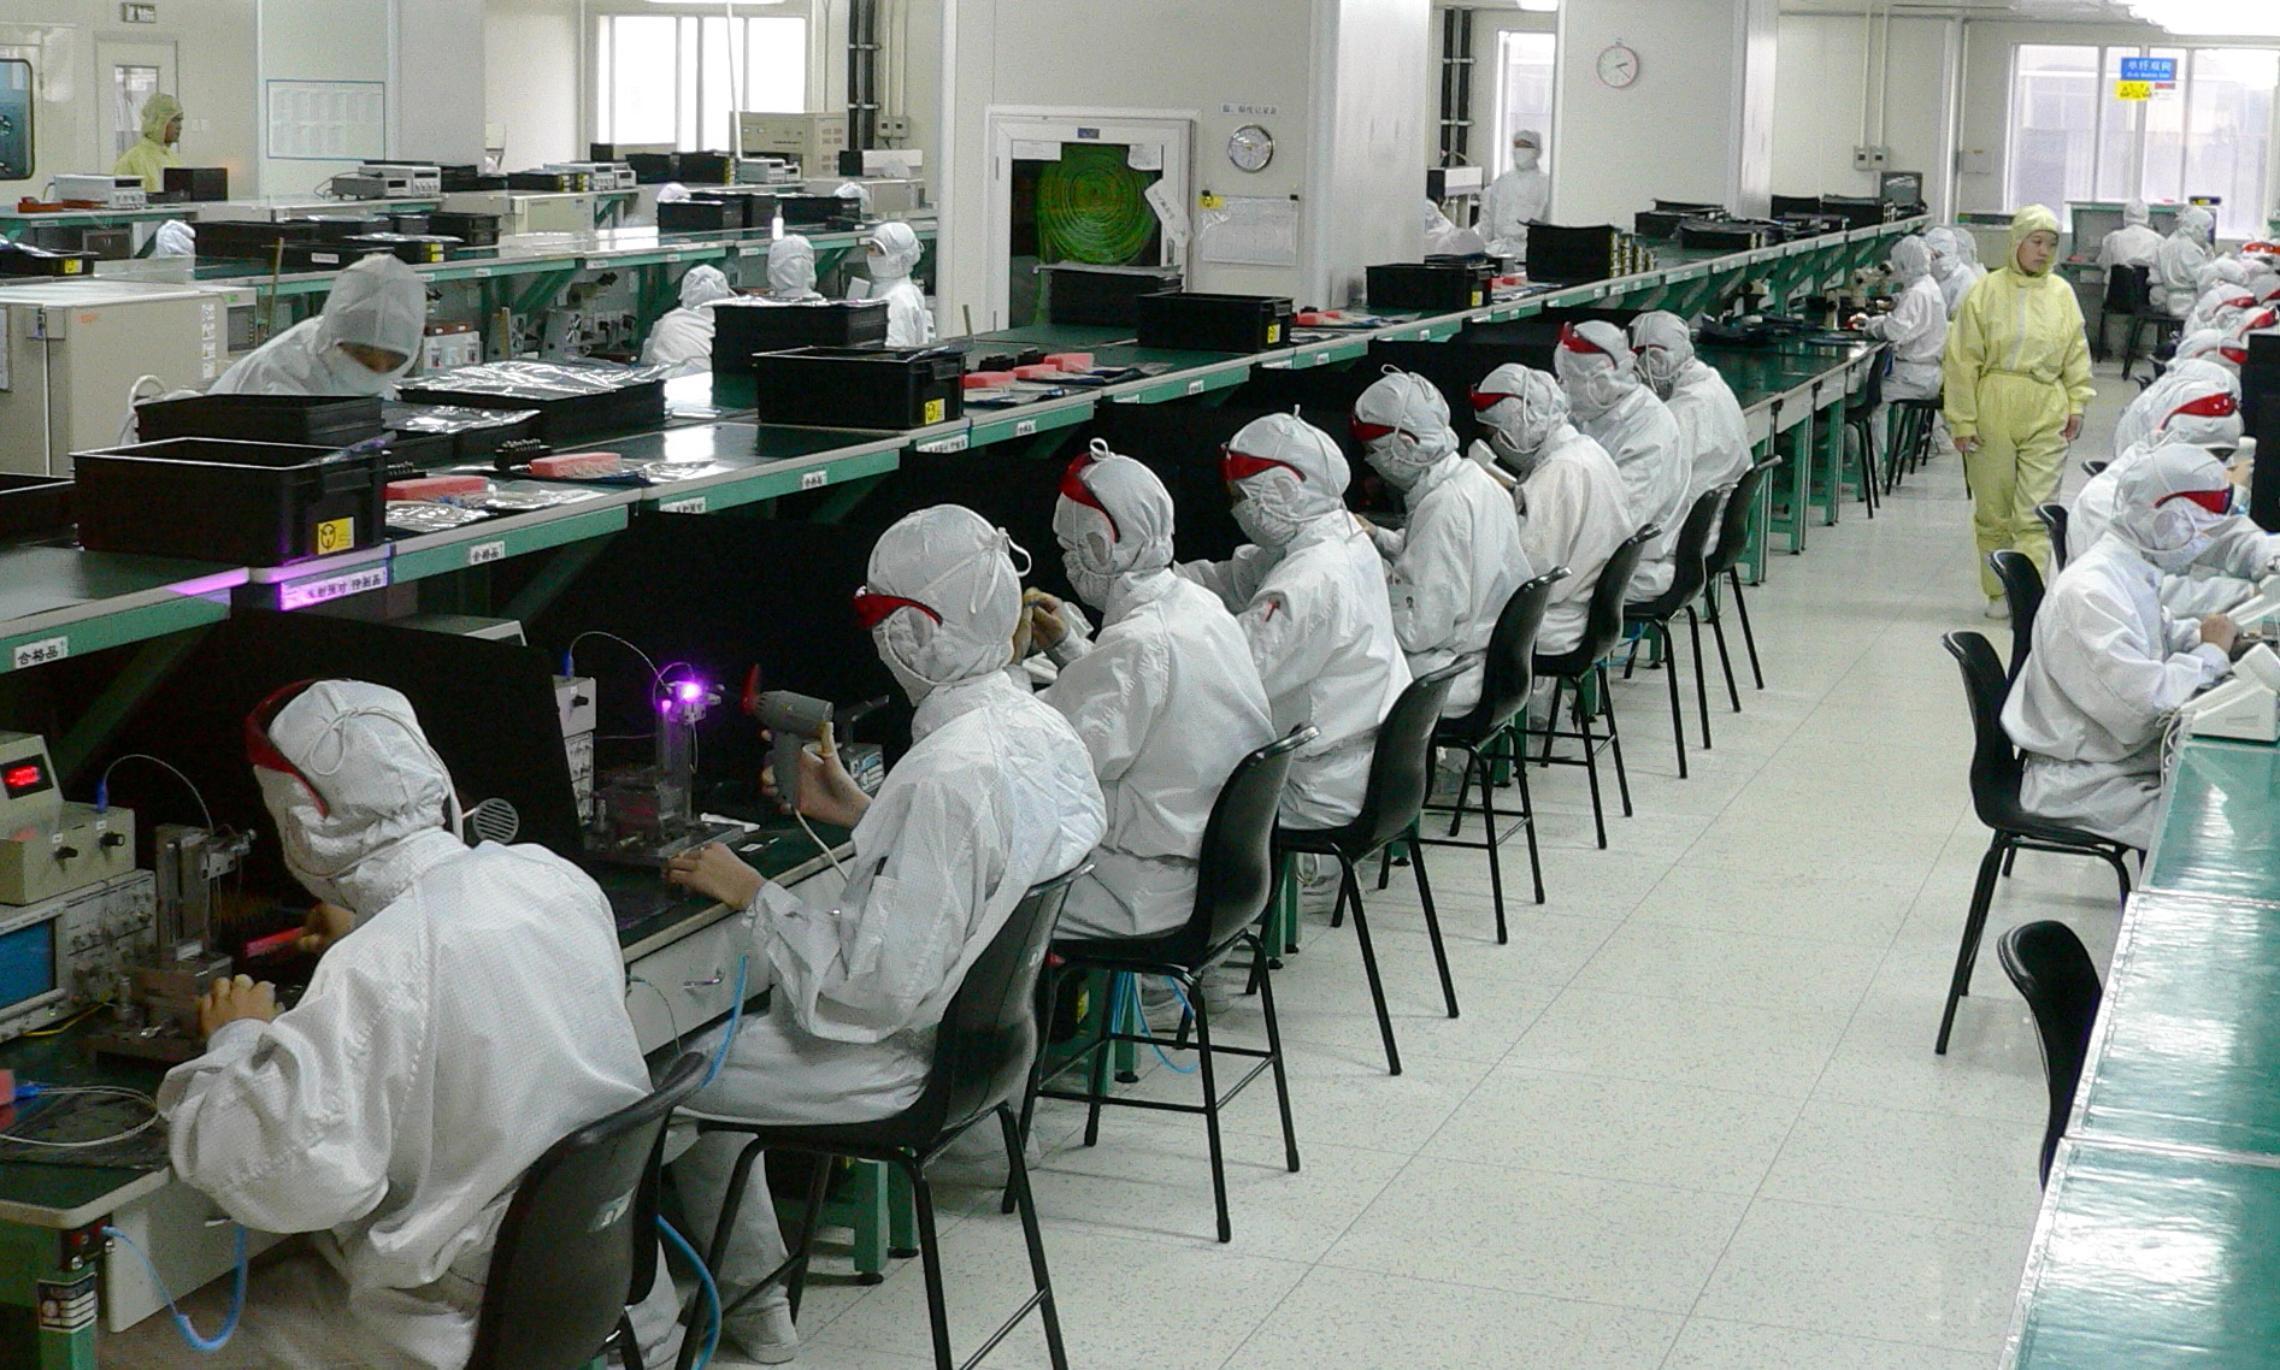 Одна из фабрик по изготовлению электронных компонентов. Сейчас закрыта из-за коронавируса. Фото Steve Jurvetson (CC BY 2.0)